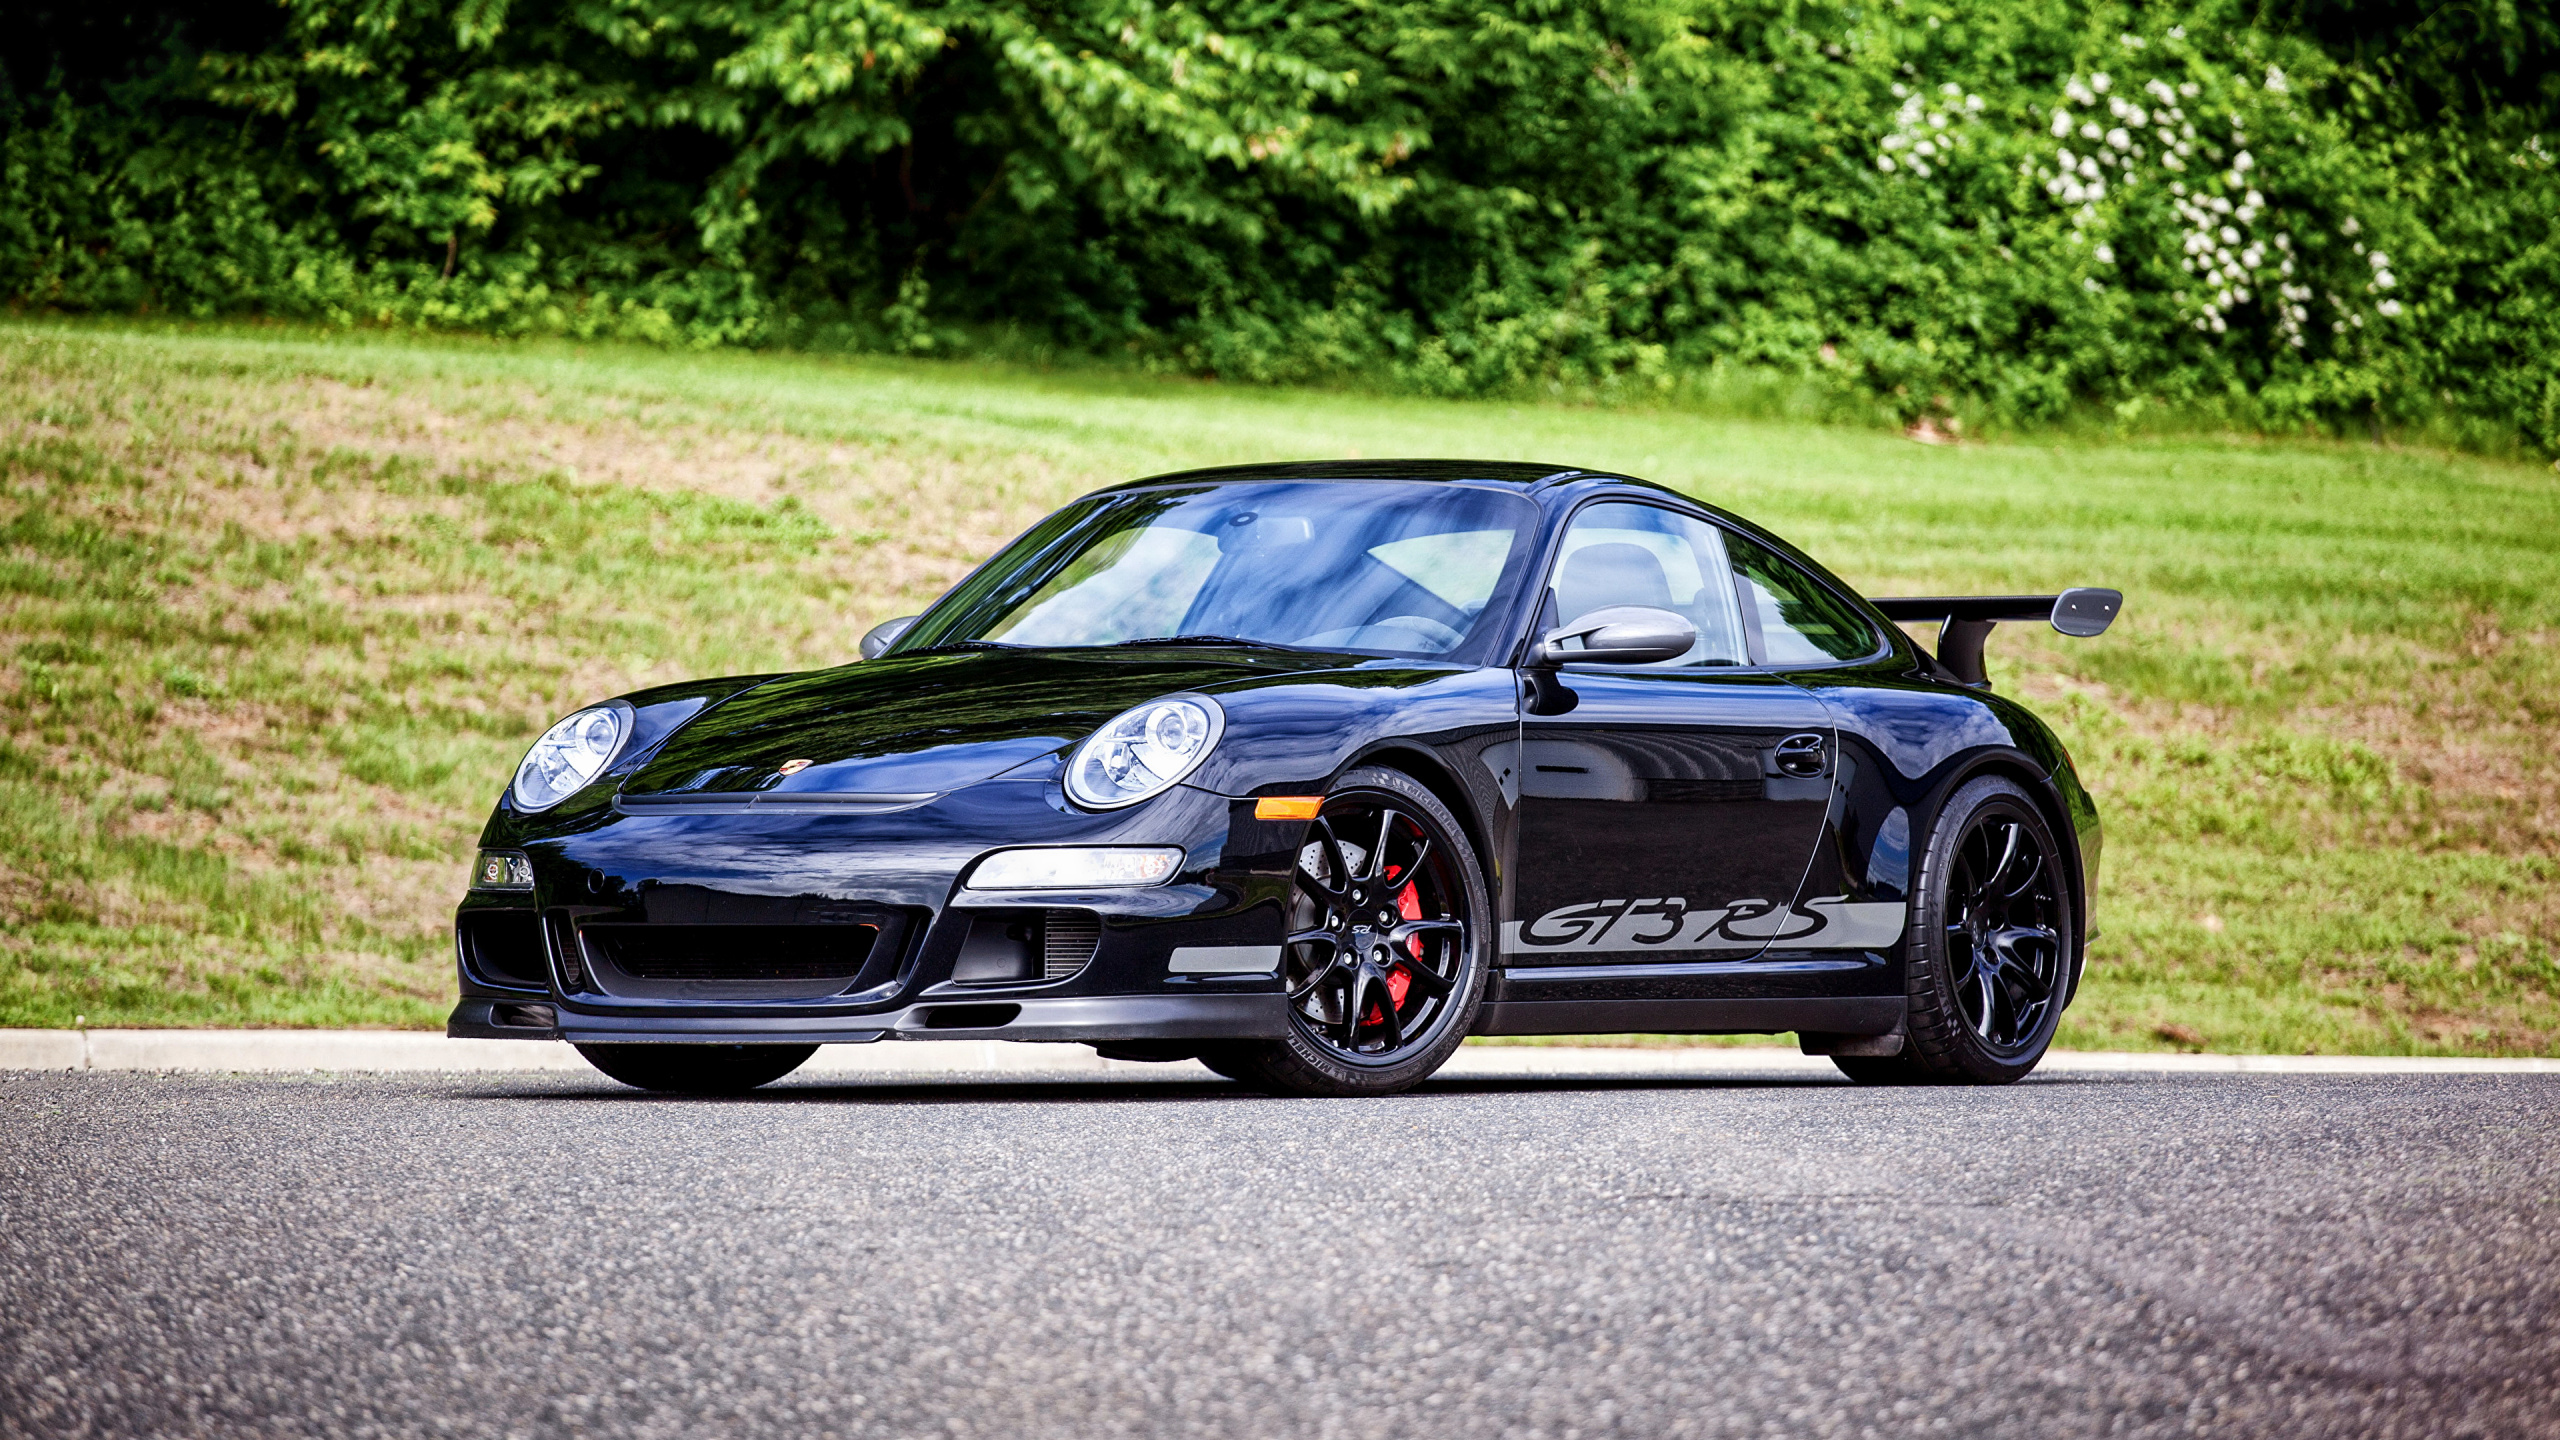 Porsche 911 Negro en la Carretera Durante el Día. Wallpaper in 2560x1440 Resolution